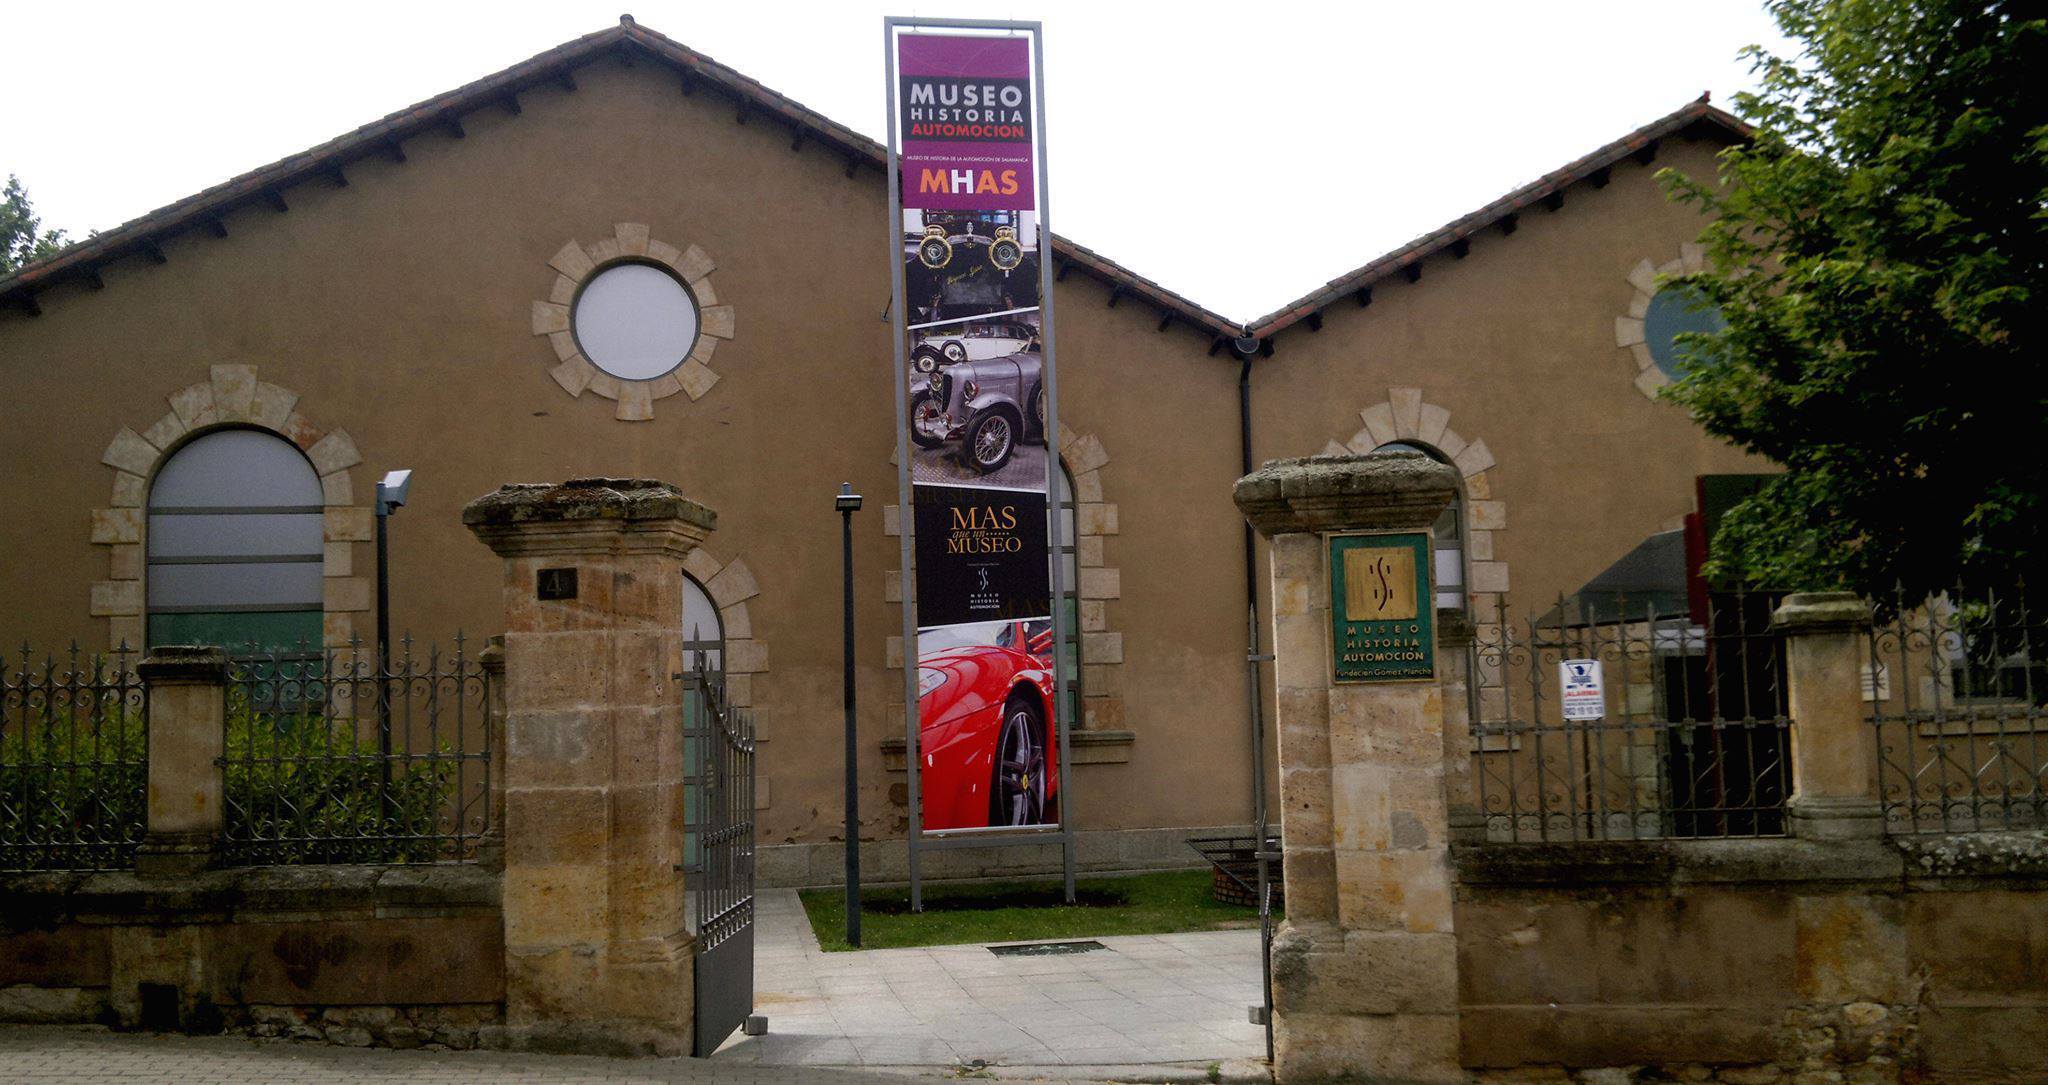 Museo de Historia de Automocion de salamanca